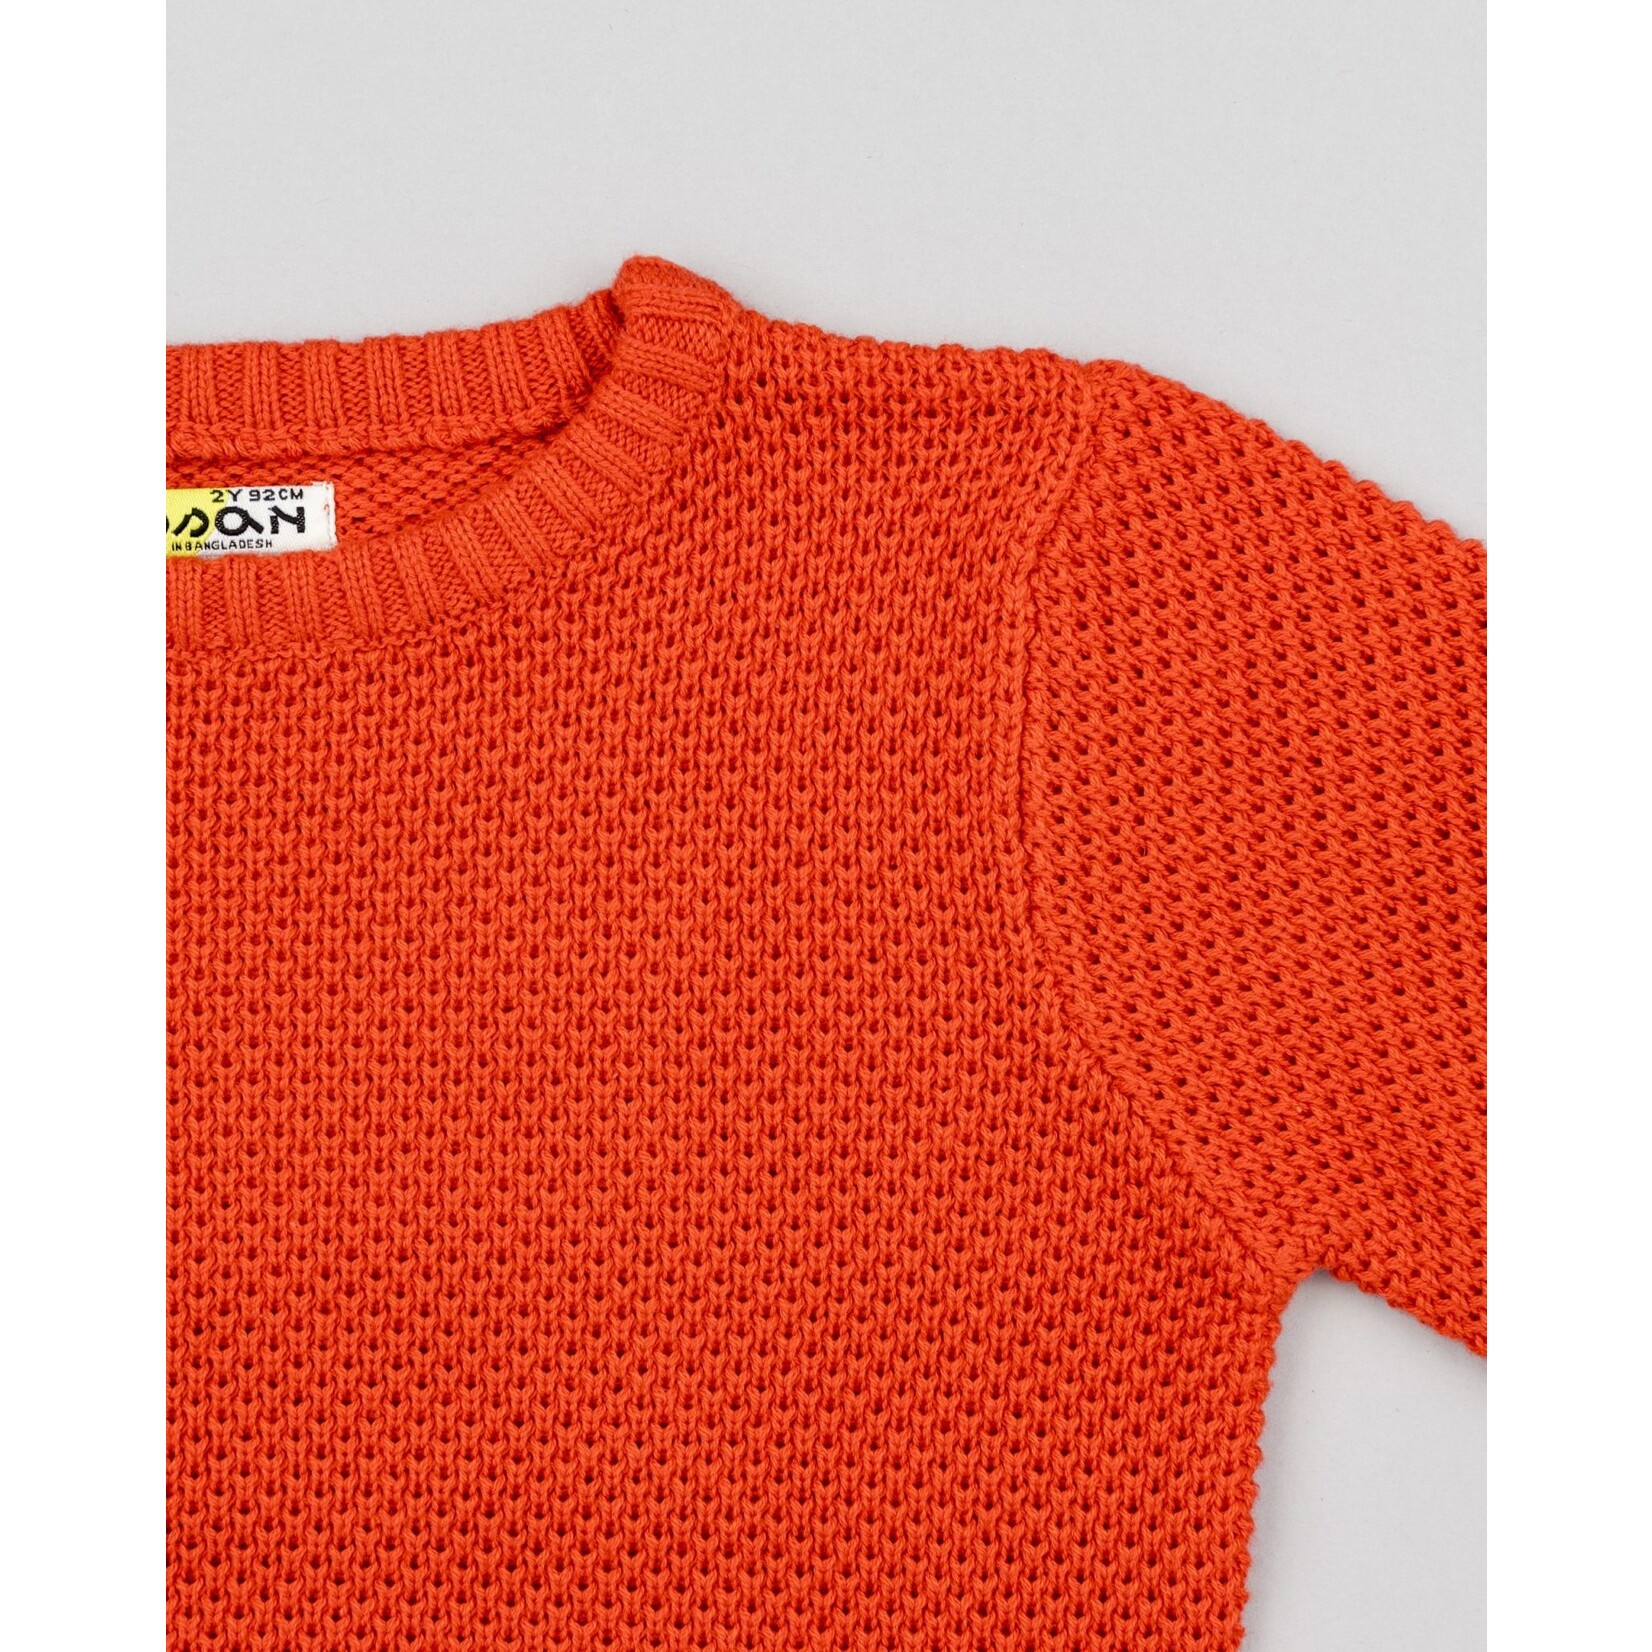 Losan LOSAN - Plain Dark Orange Knit Sweater 'Camp Friends'